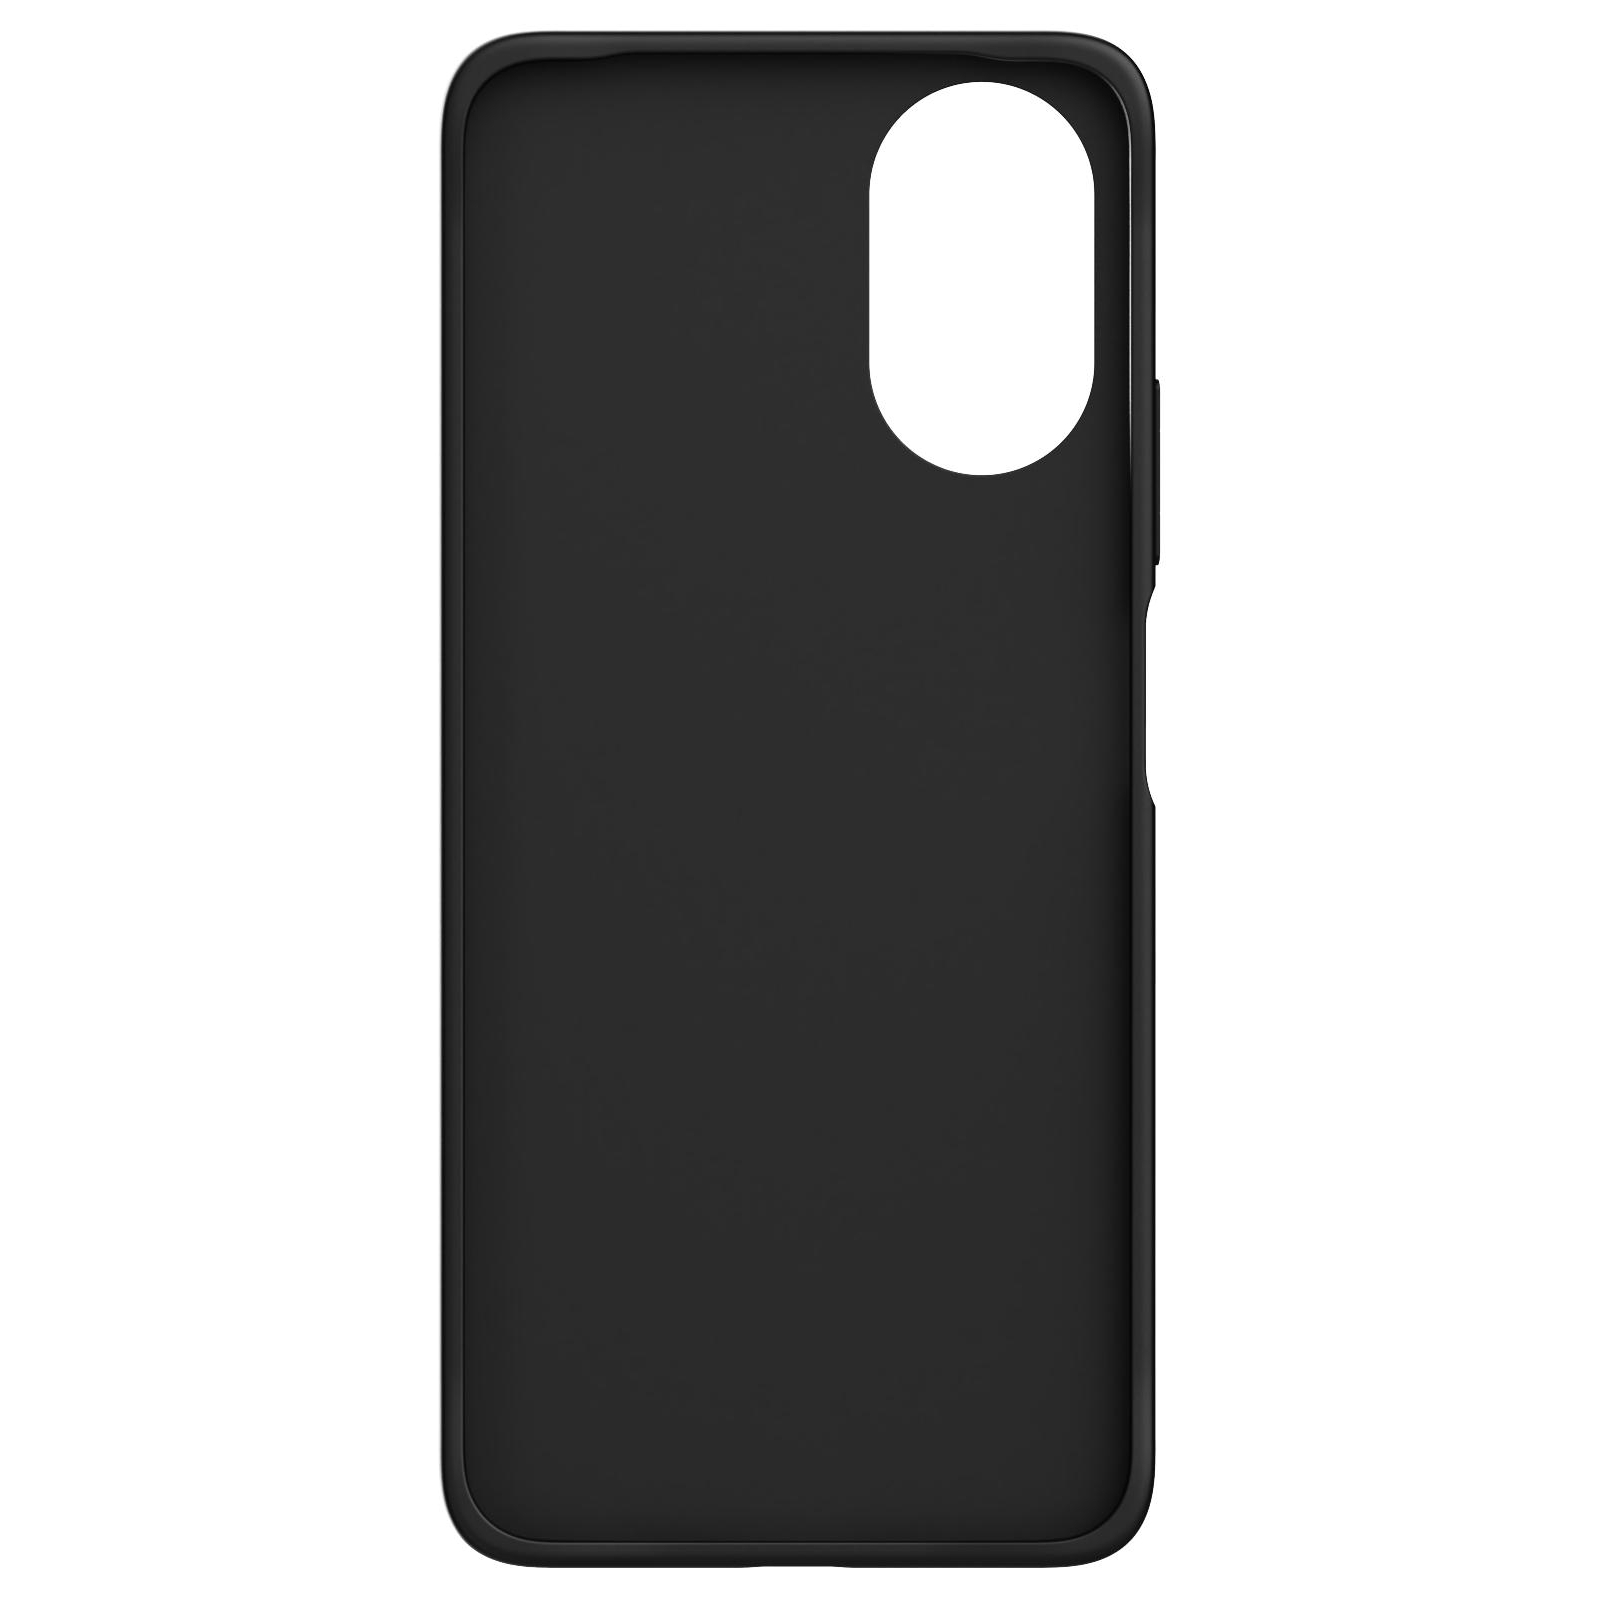 Чехол для мобильного телефона Oppo A38/AL23011 BLACK (AL23011 BLACK) изображение 2